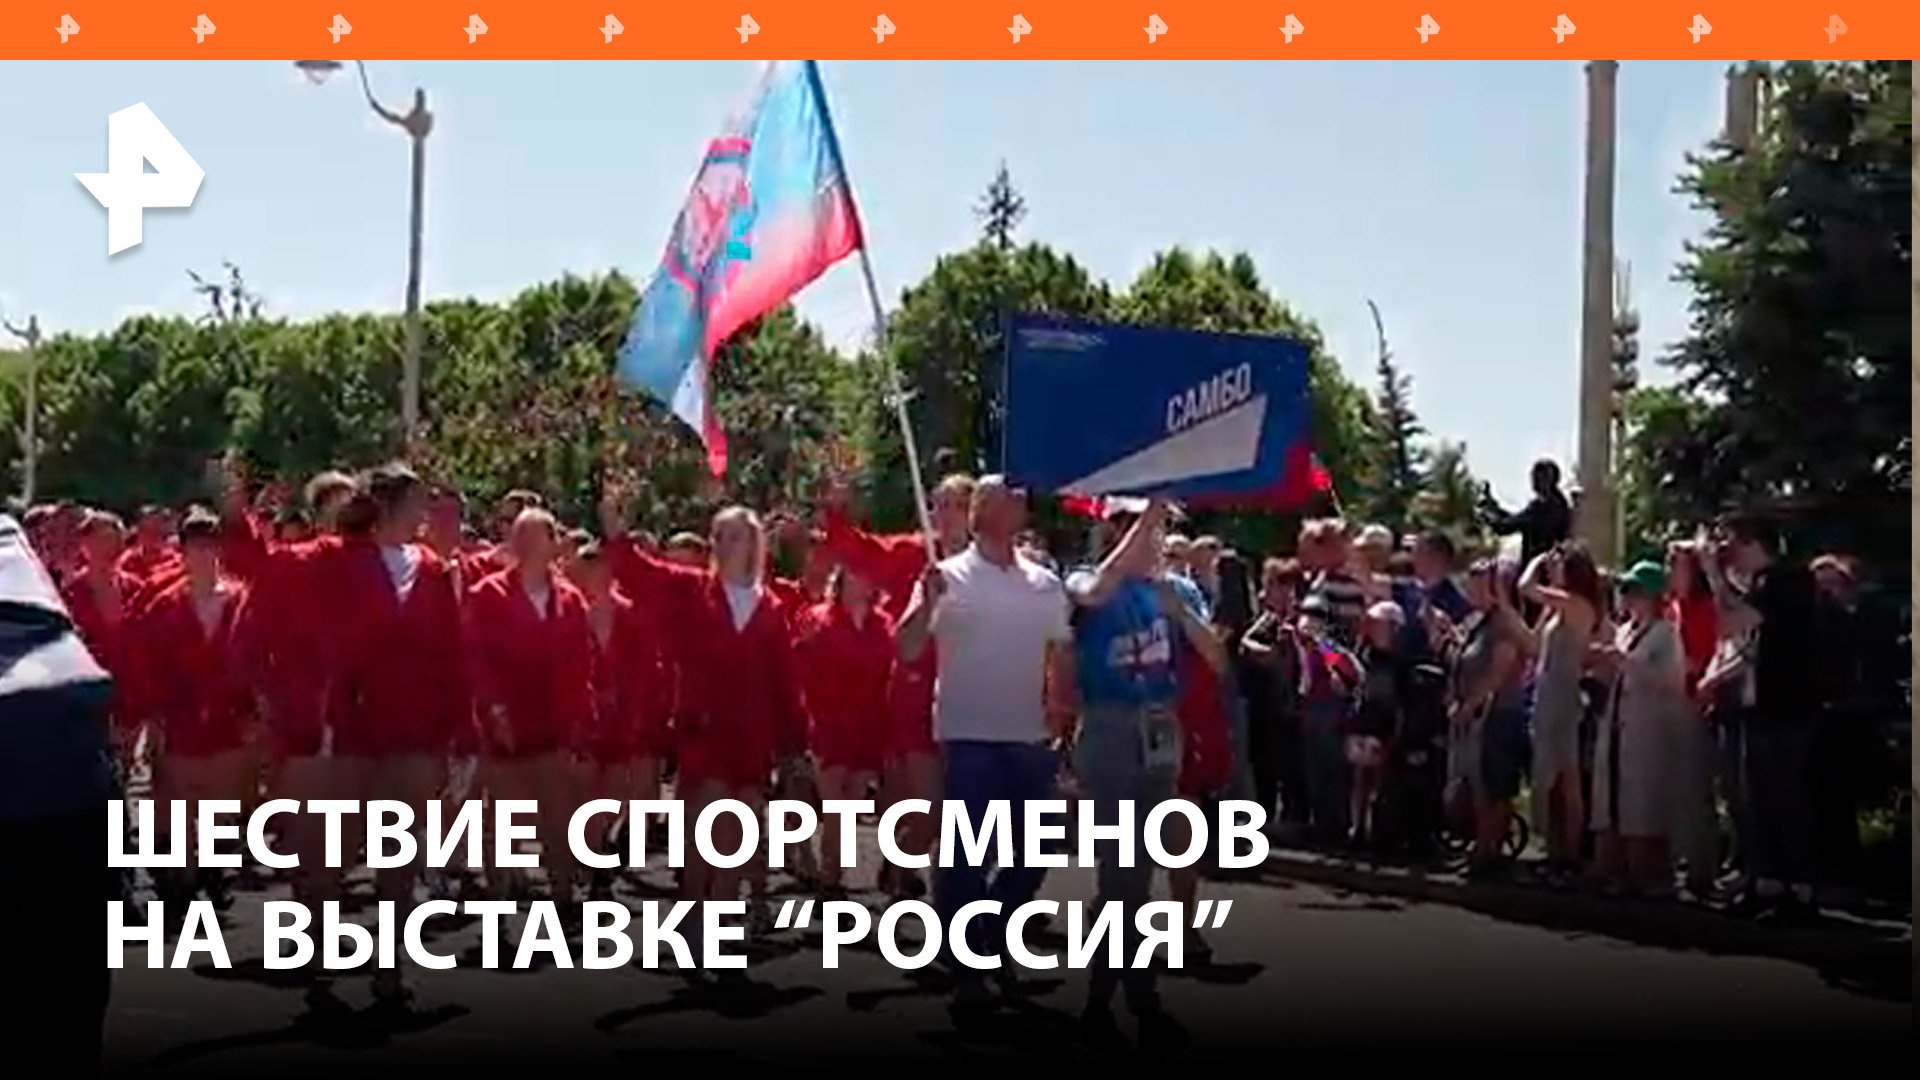 Более двух тысяч спортсменов поучаствовало в шествии на выставке "Россия" / РЕН Новости